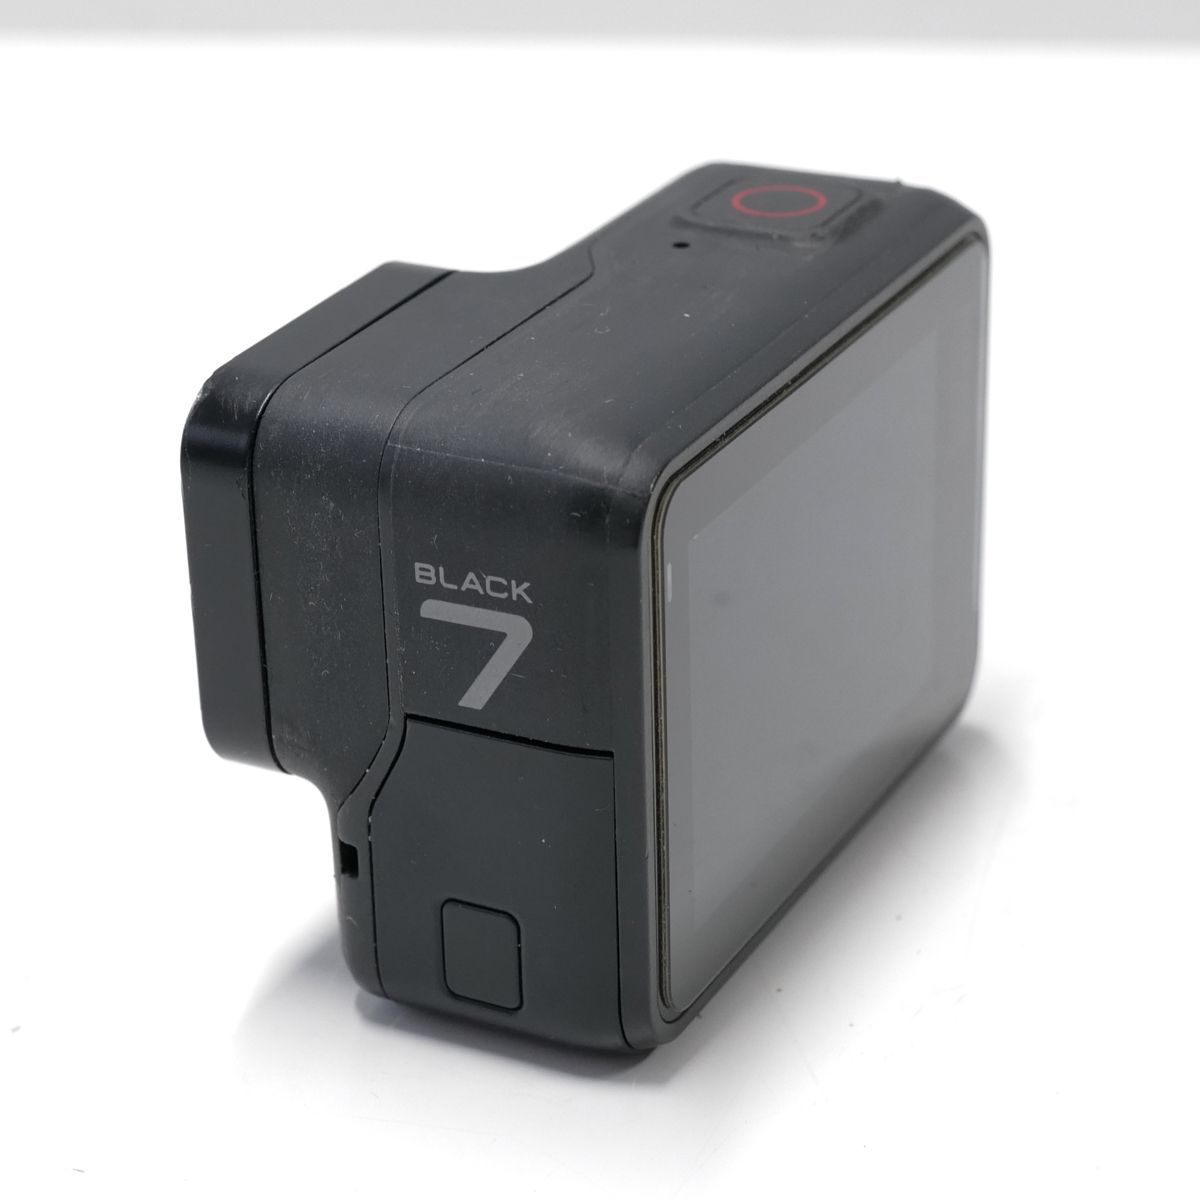 【価格】GoPro HERO7 Black CHDHX-701-FW+バッテリー+ケース アクションカメラ・ウェアラブルカメラ